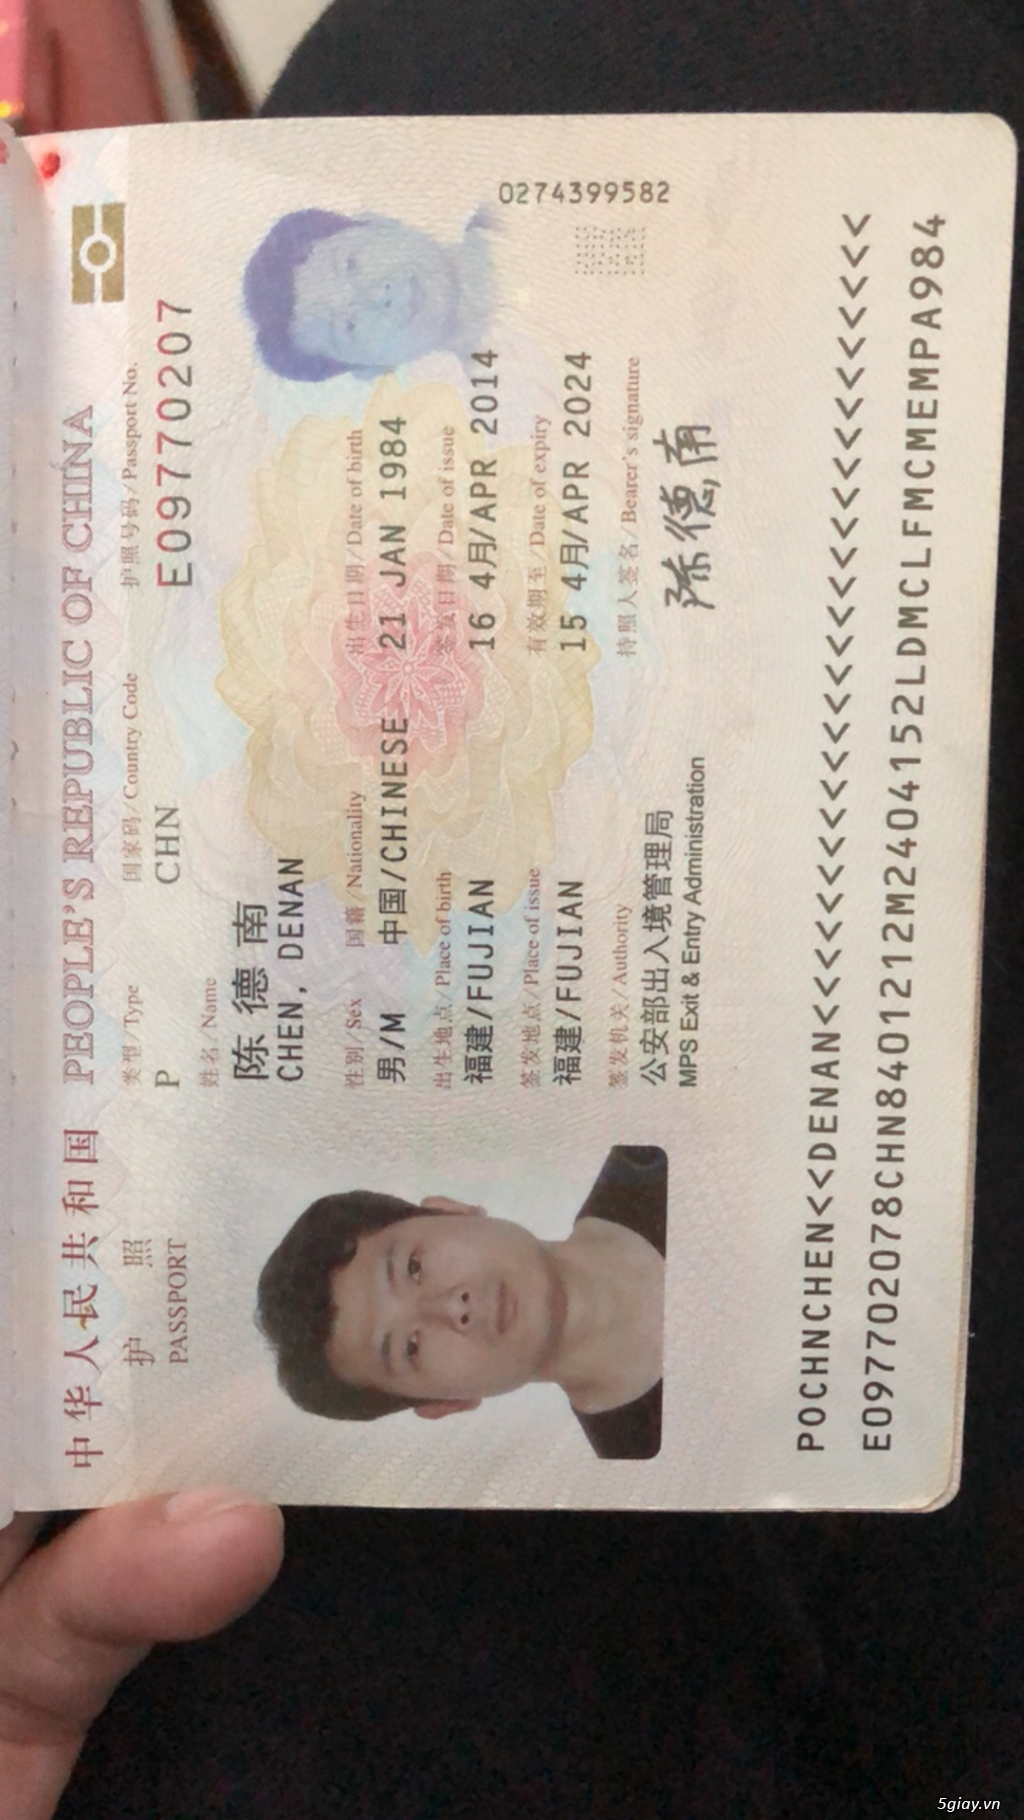 Xin visa 1 năm cho người nước ngoài